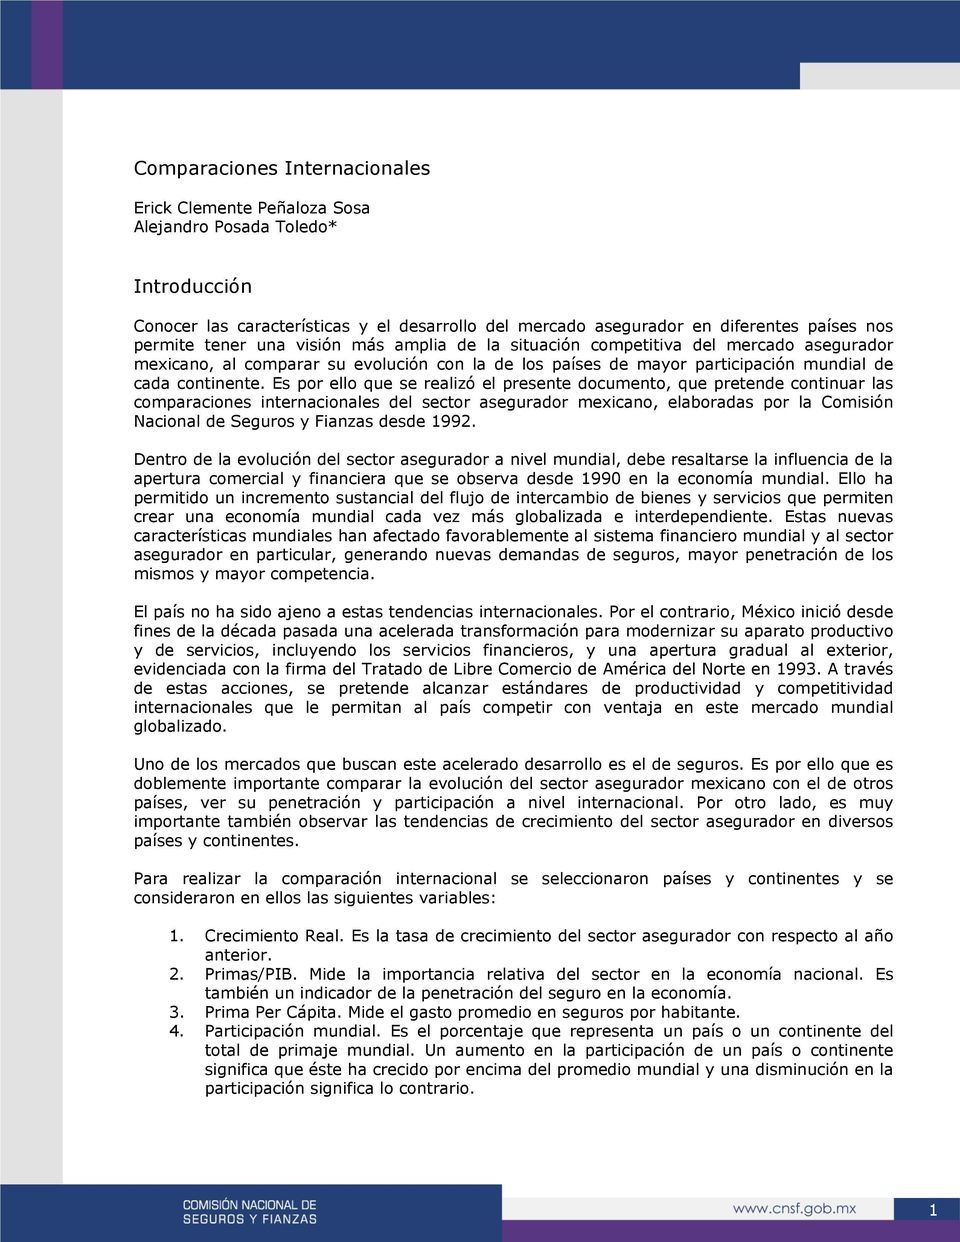 Es por ello que se realizó el presente documento, que pretende continuar las comparaciones internacionales del sector asegurador mexicano, elaboradas por la Comisión Nacional de Seguros y Fianzas